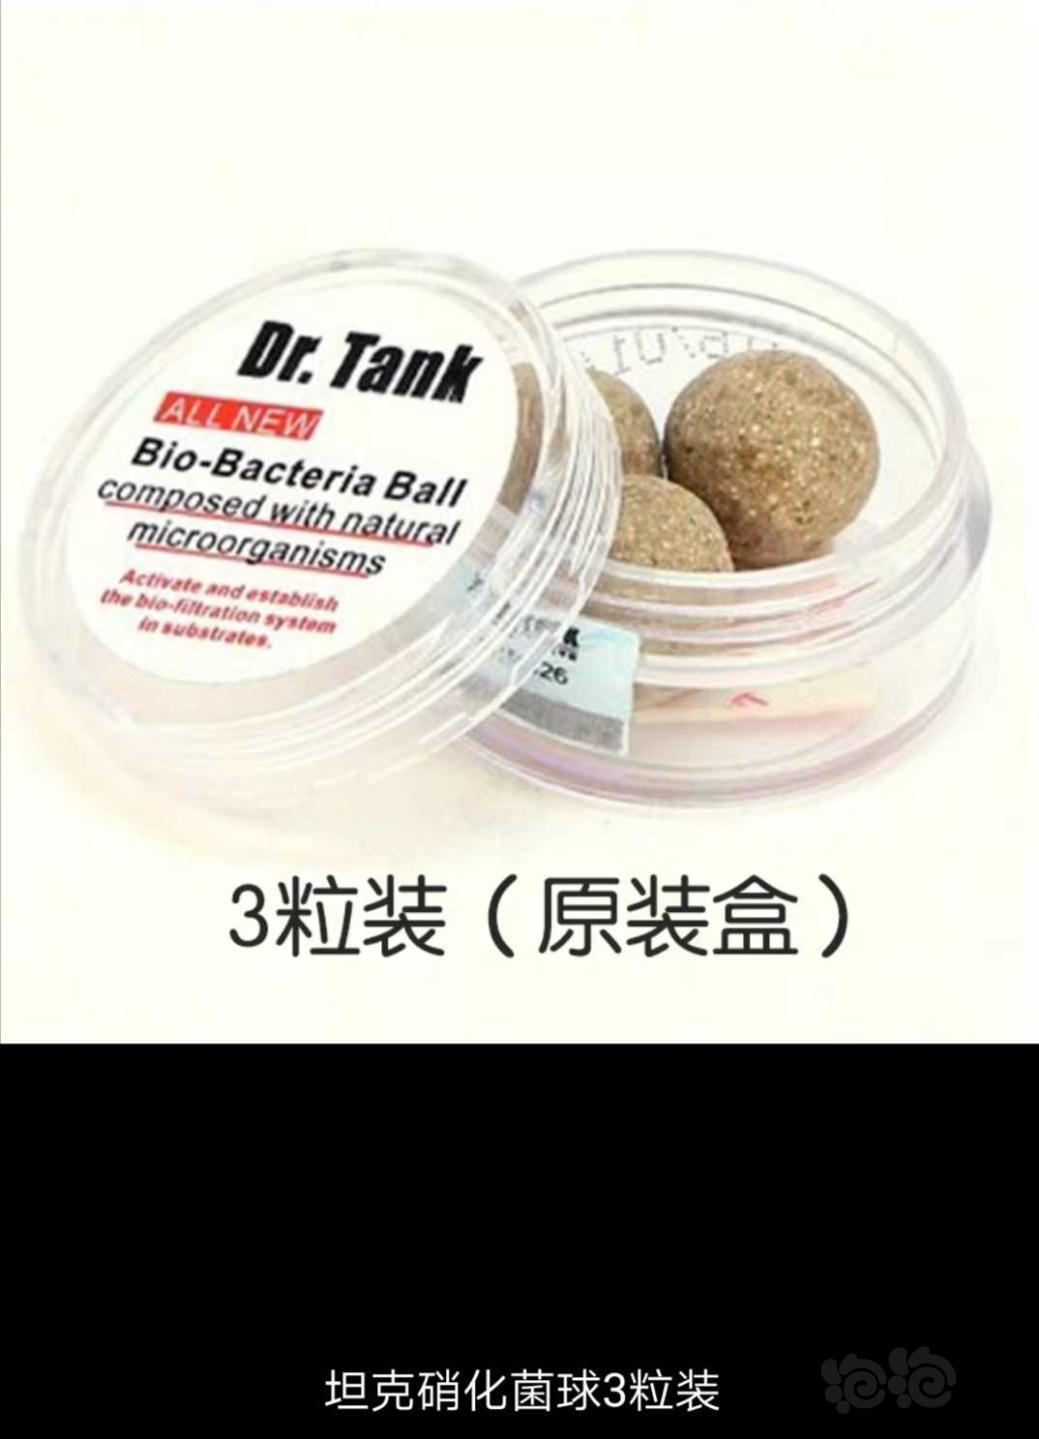 【用品】2019-11-05#RMB拍卖坦克二代硝化细菌球三粒装*3盒-图1